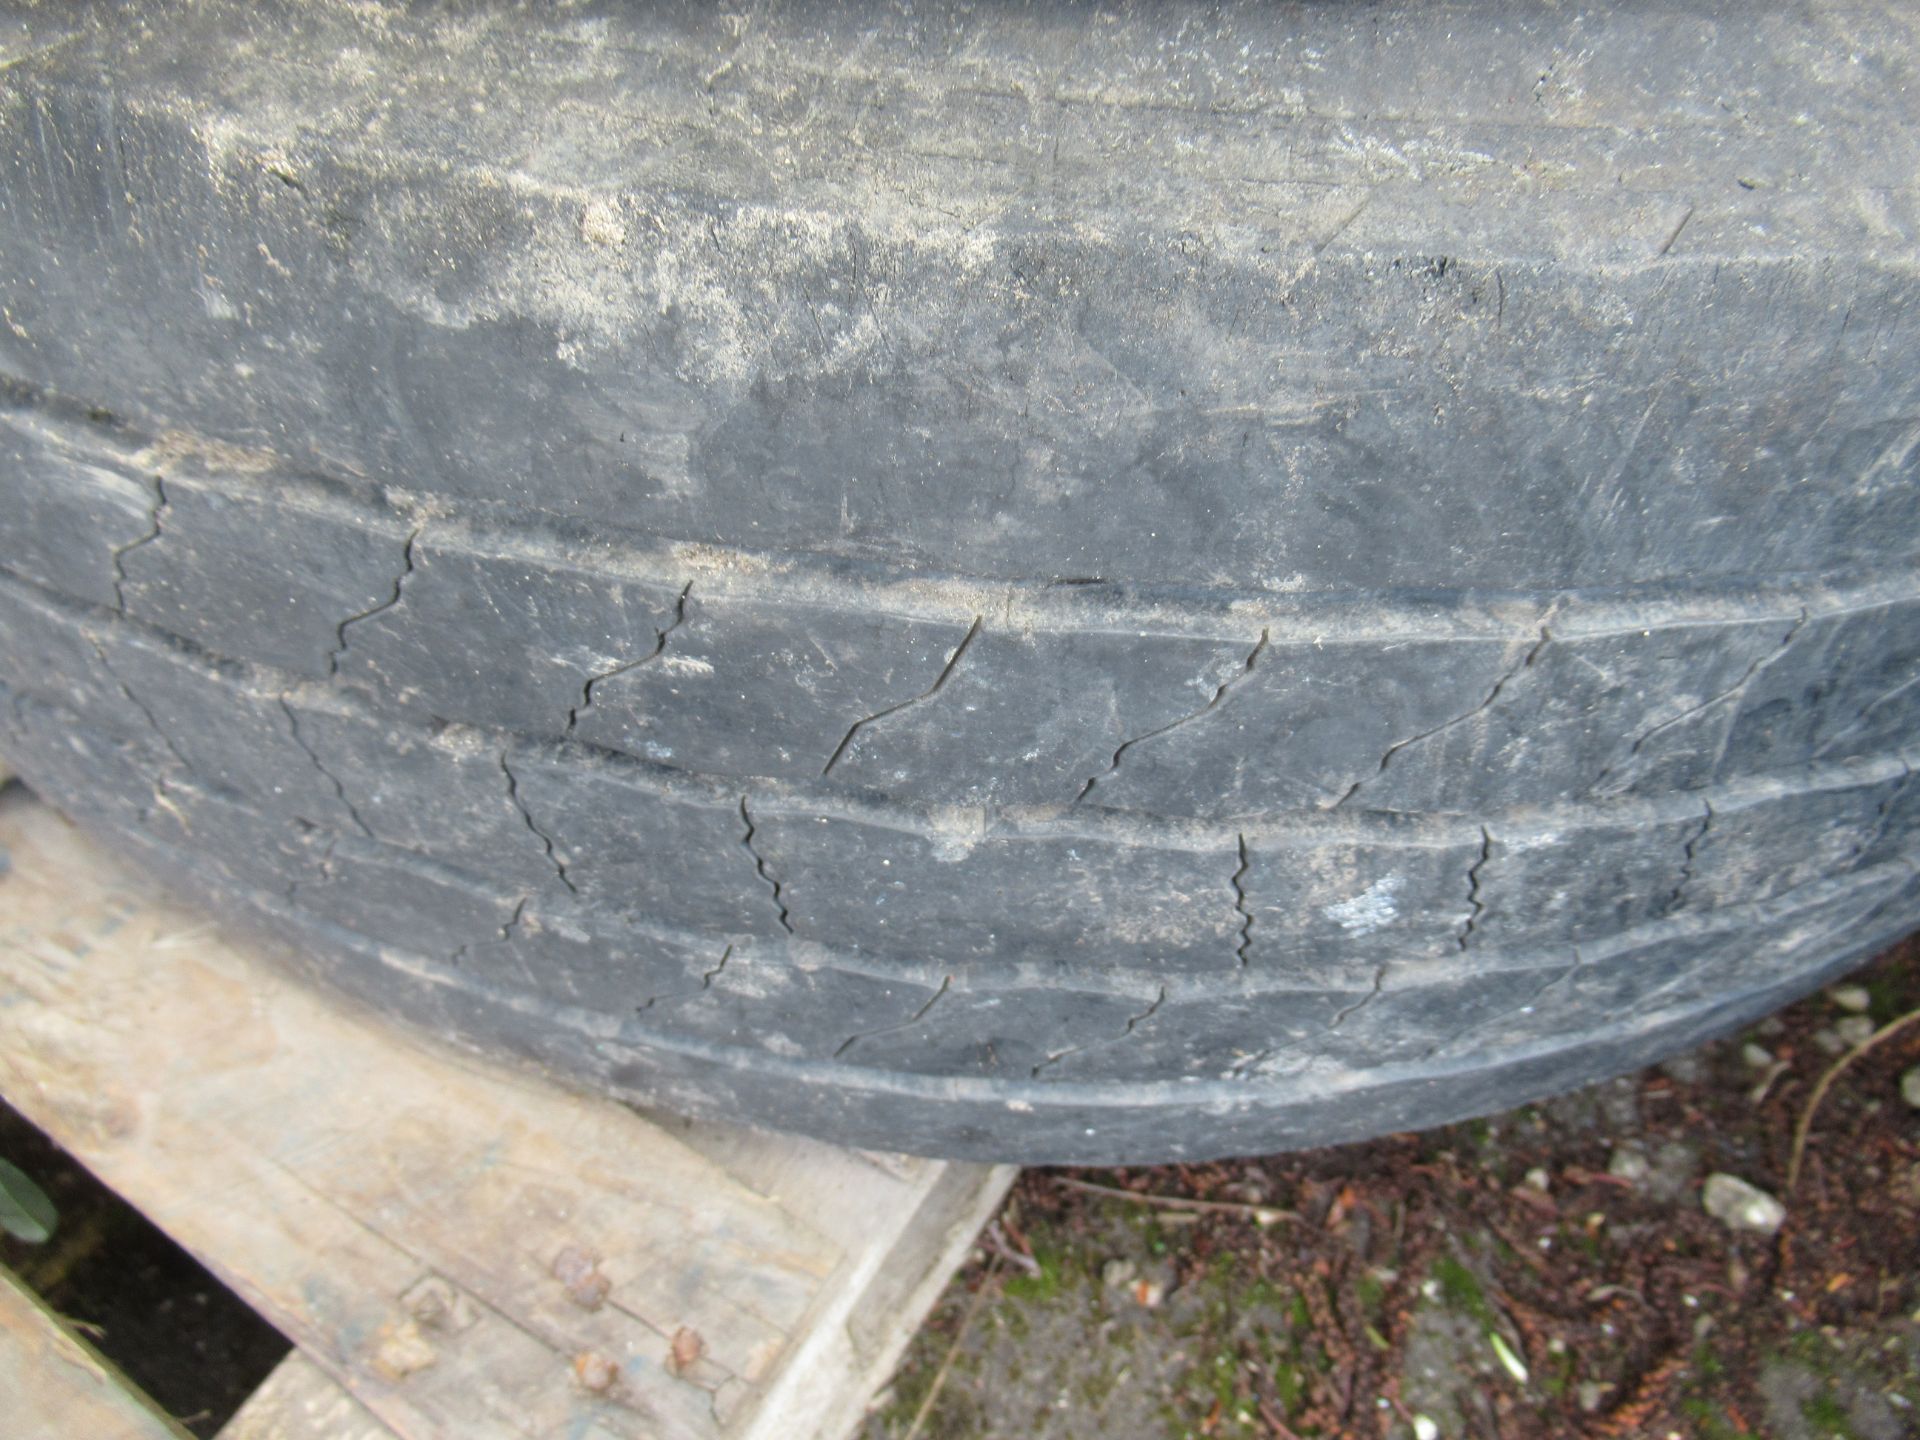 5x Partworn Tyres ( 285/70R/19.5, 245/70R/19.5, 245/70R/19.5, 285/70R/19.5, 245/70R/19.5) - Image 7 of 7